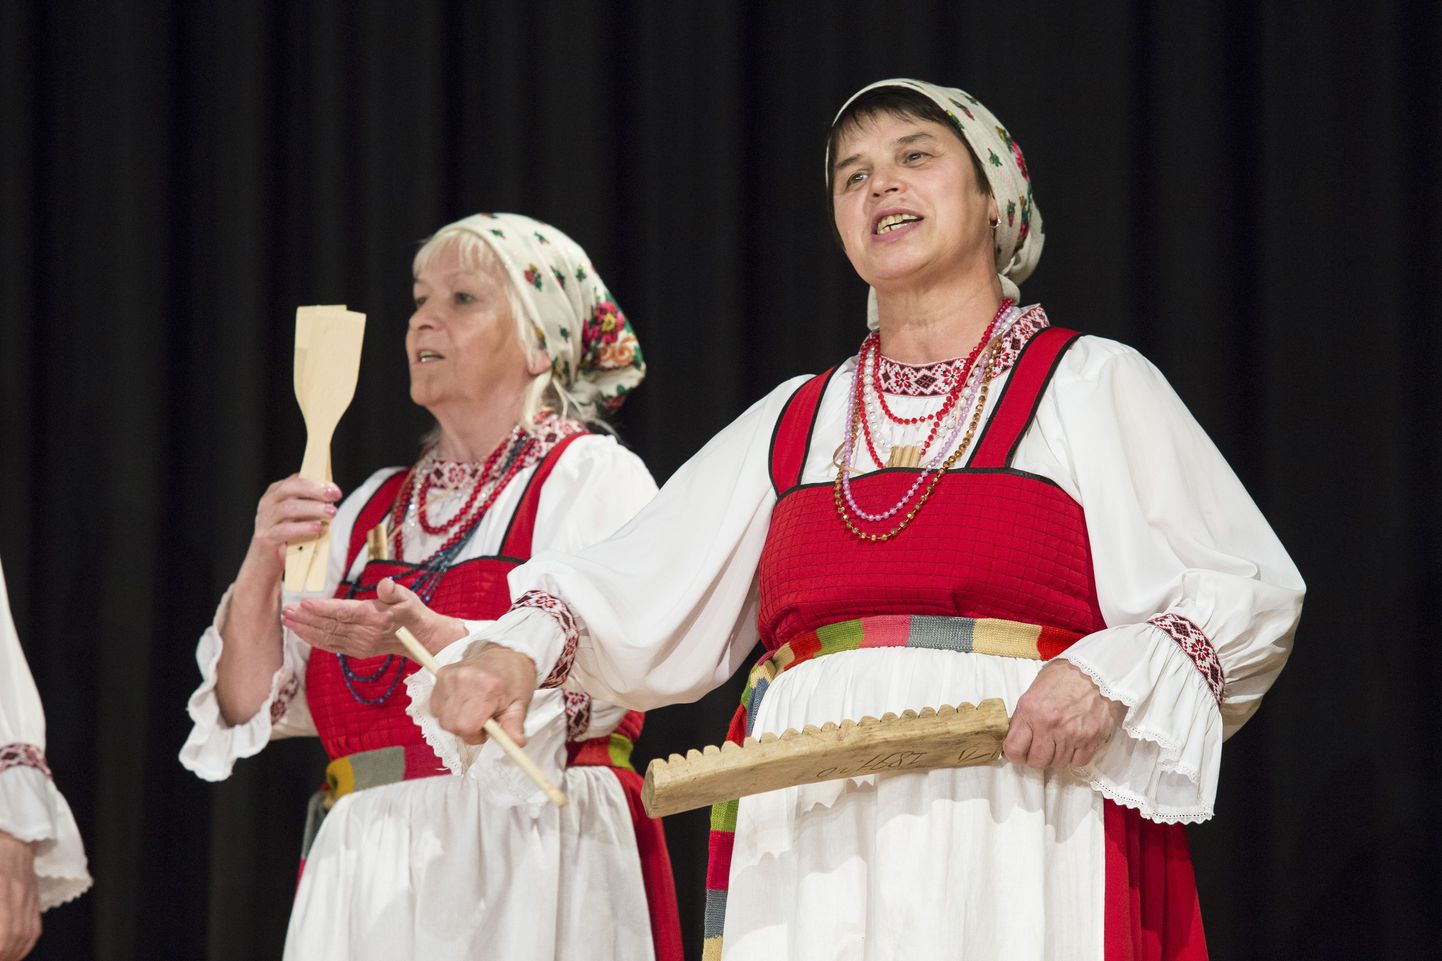 Komimaa folkloorinaised näitasid lisaks tšipsanile ka teisi rahvuslikke instrumente.